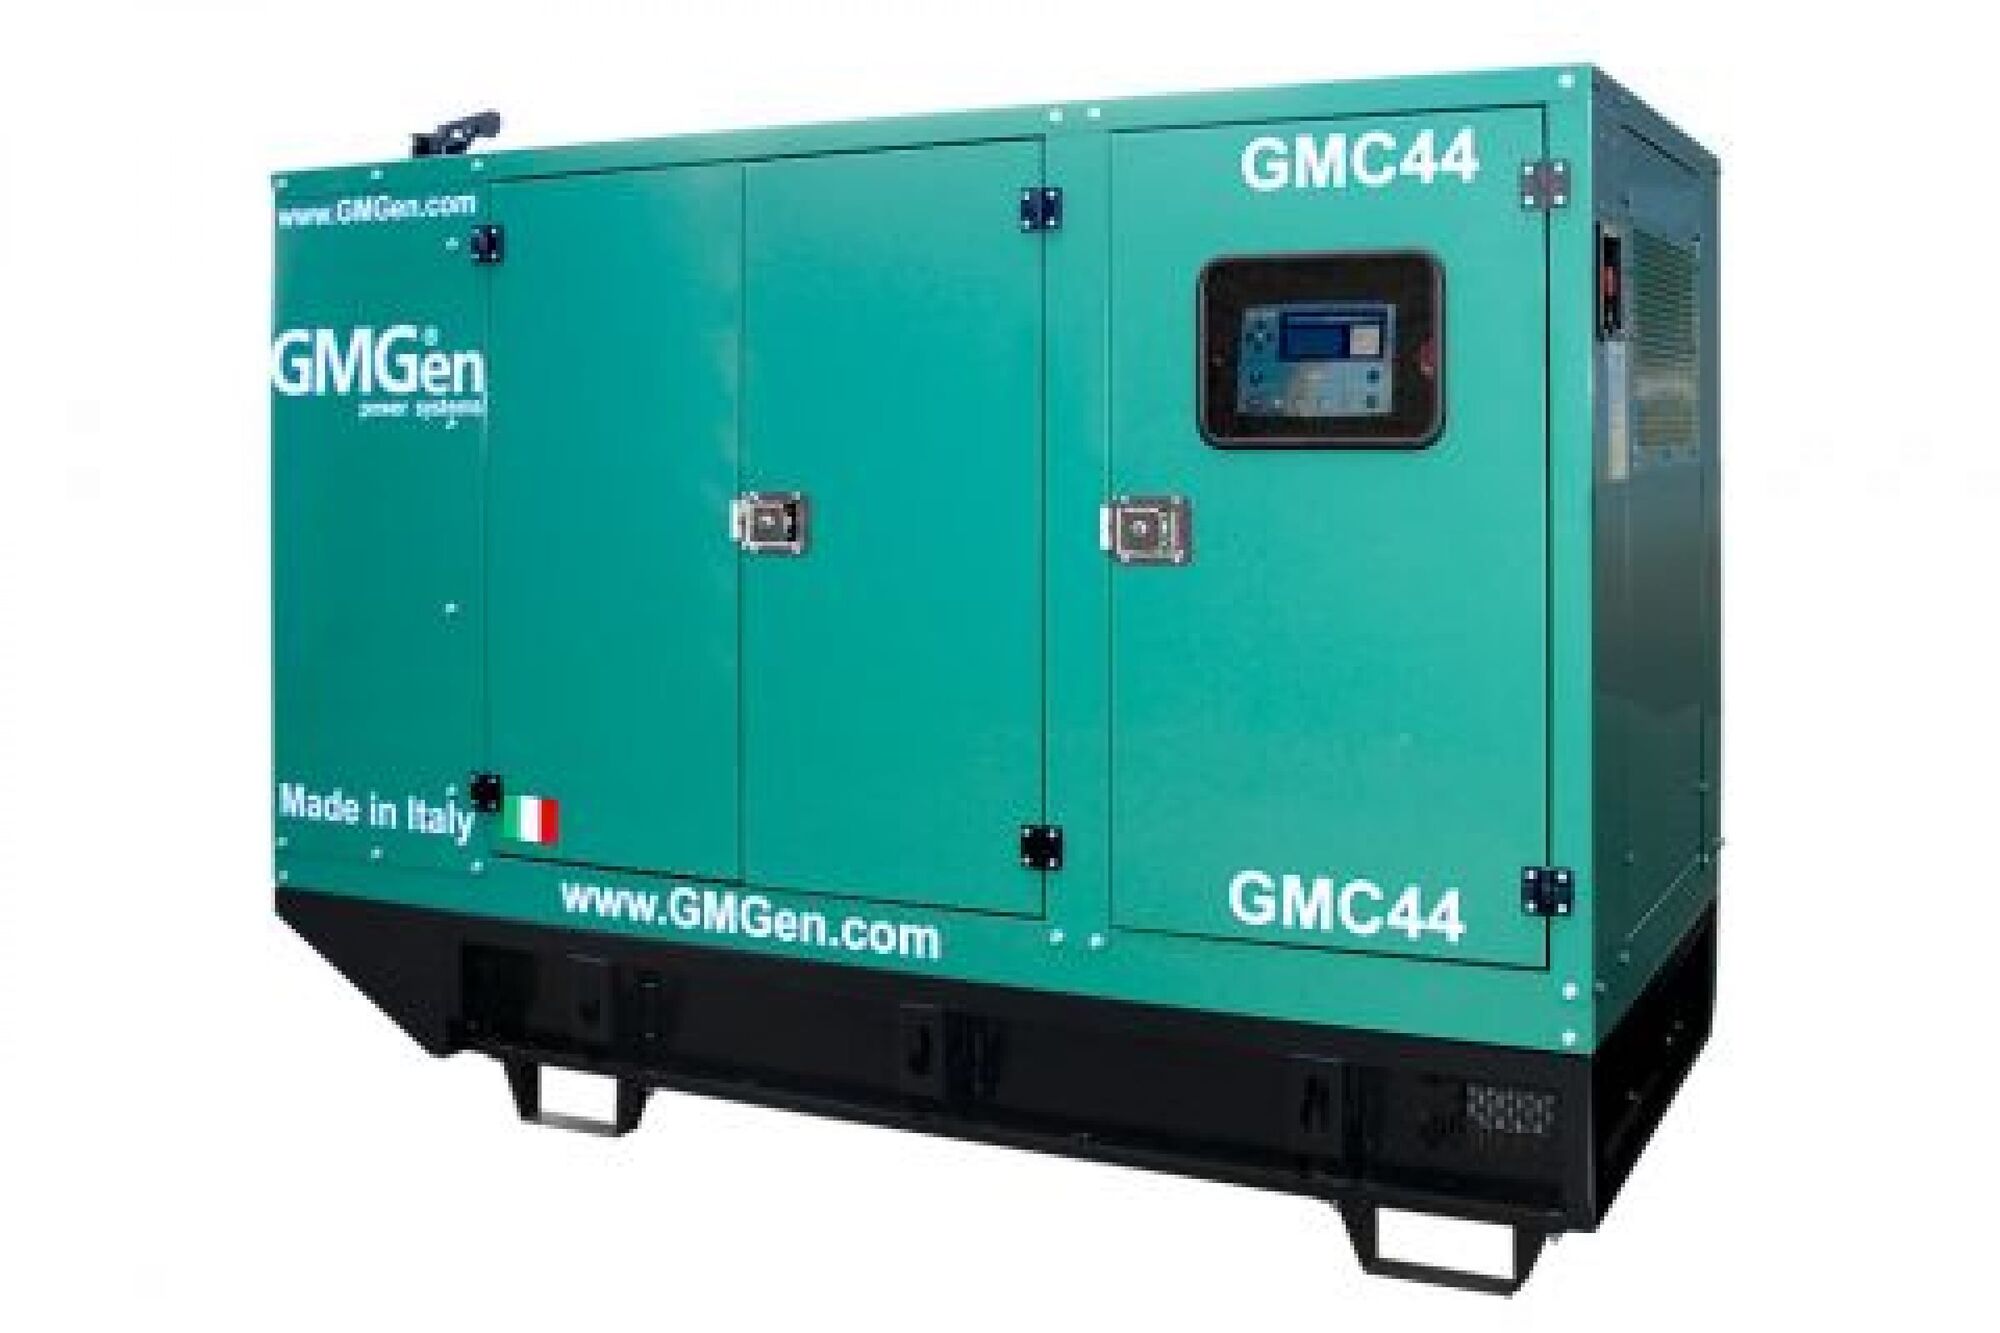 Дизель генератор GMGen Power Systems GMC44 32 кВт, 380/220 В в шумозащитном кожухе 502609